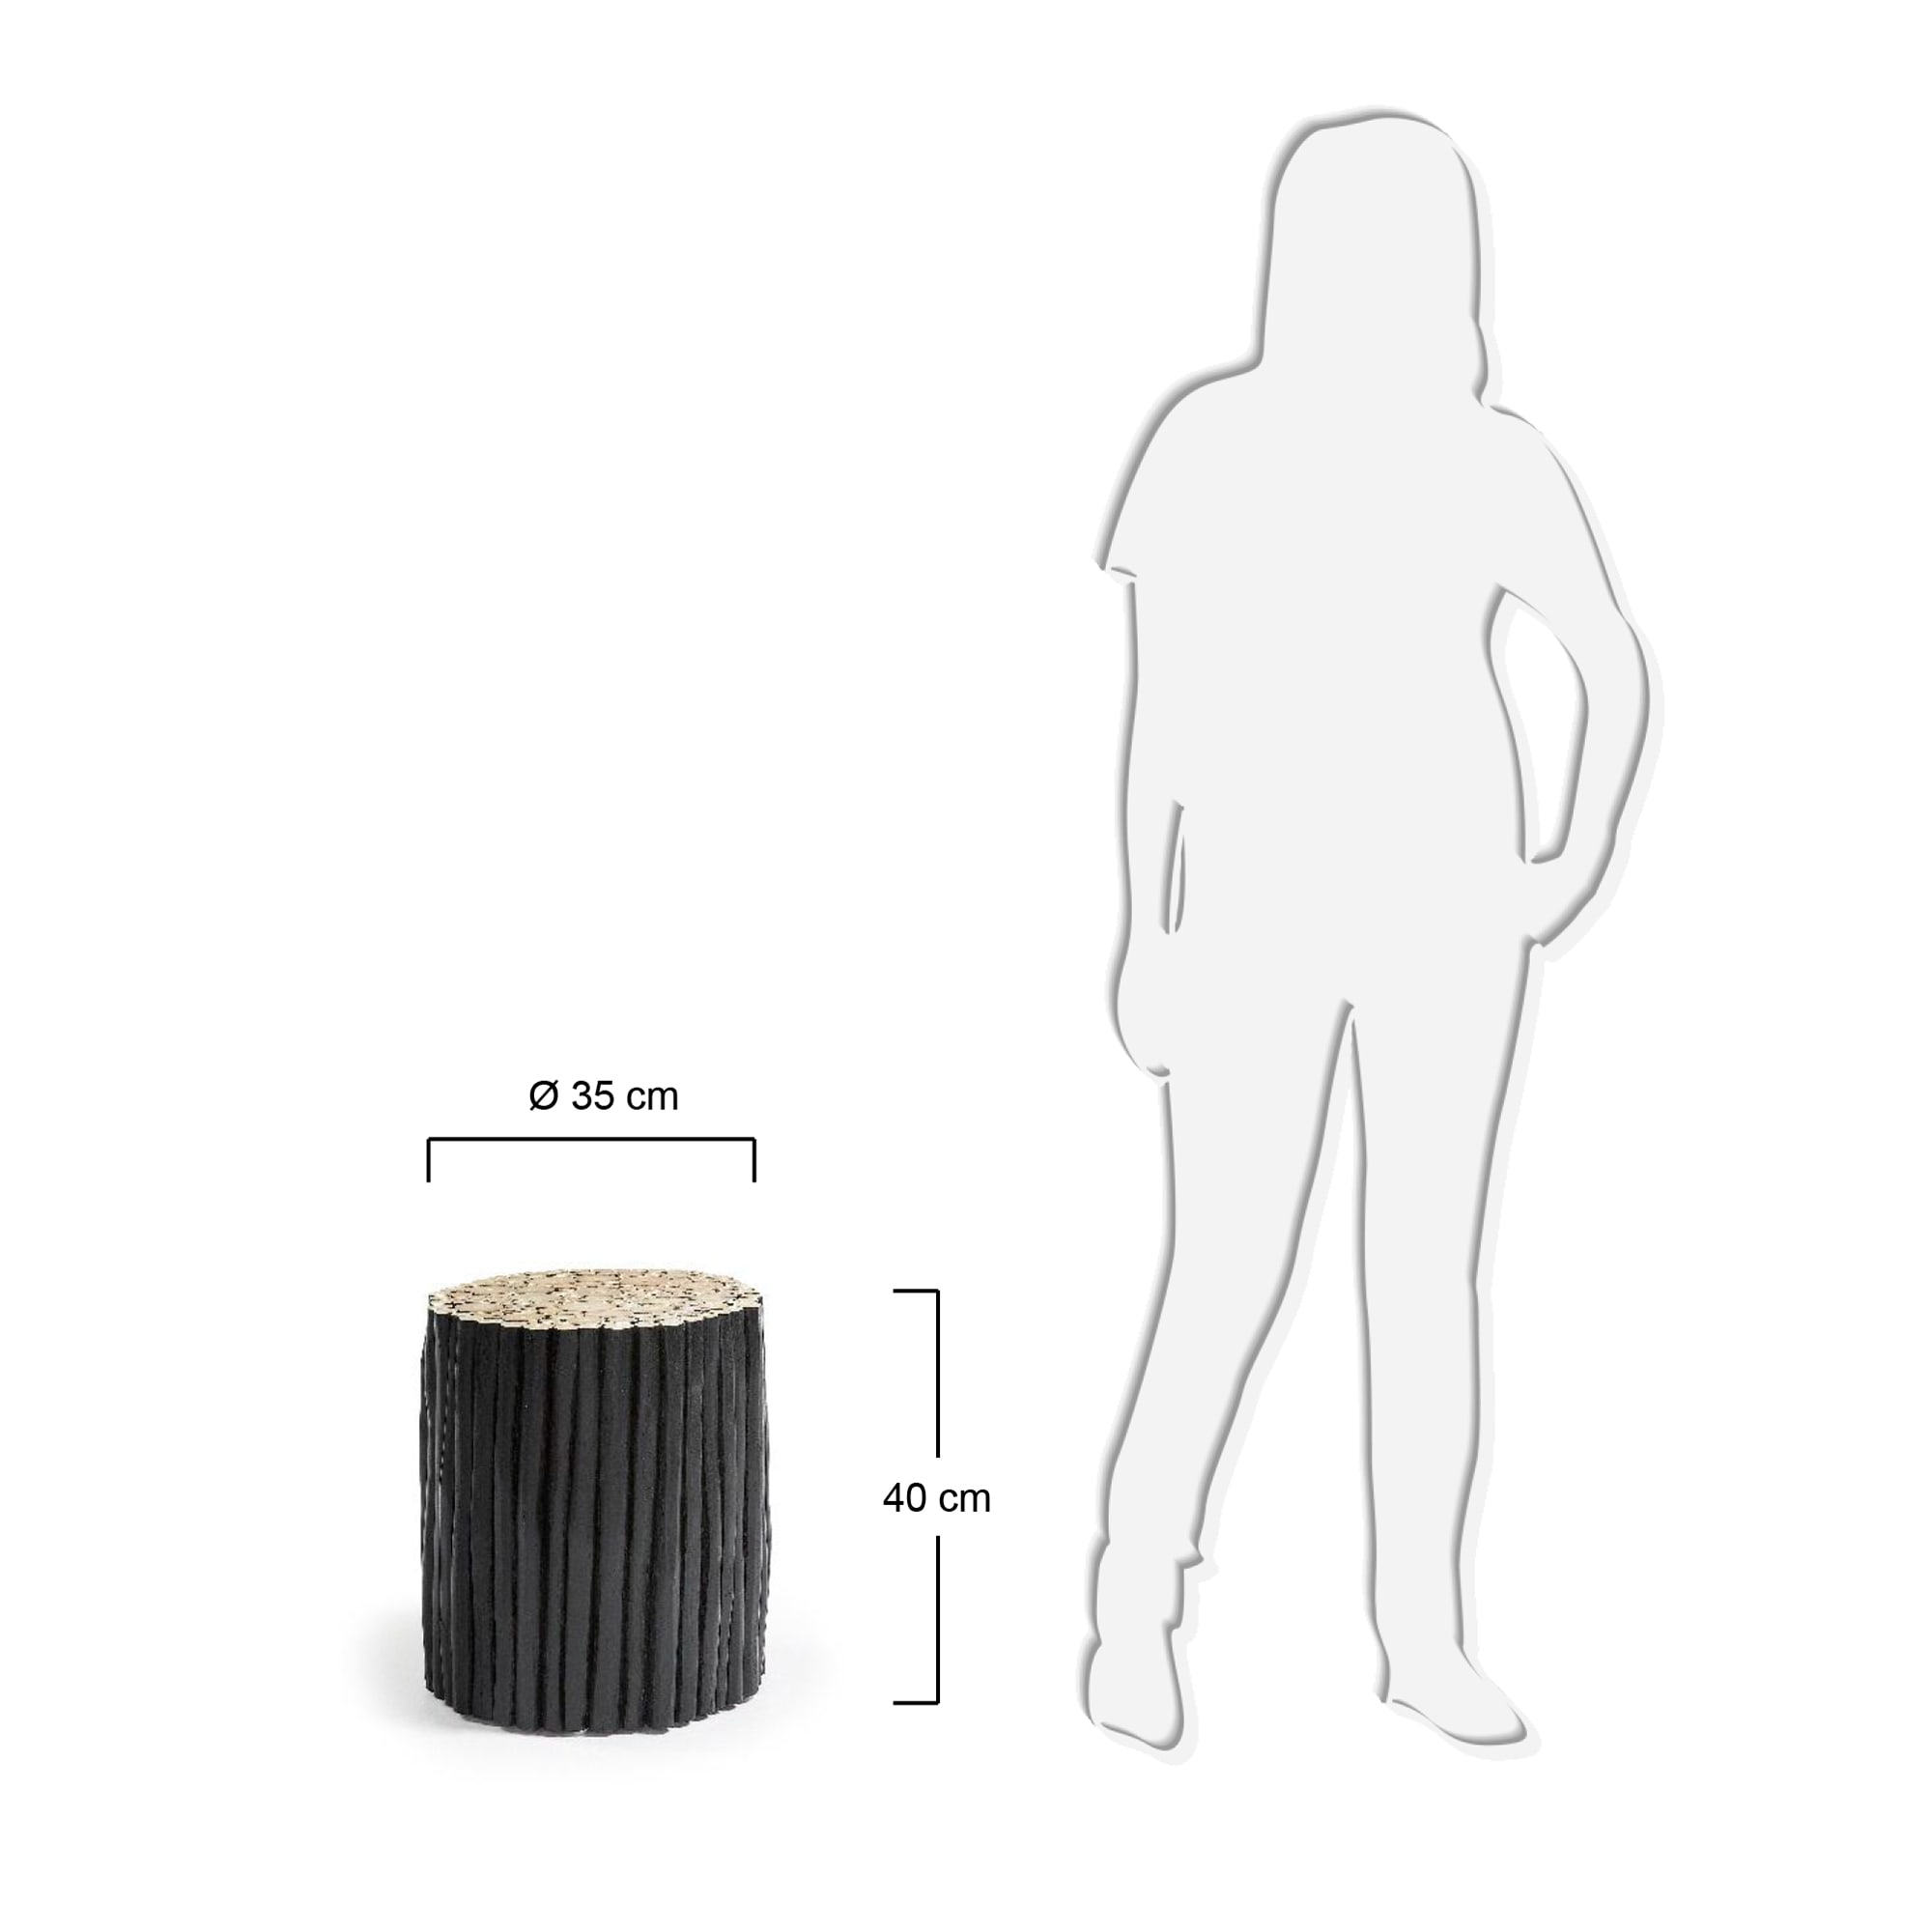 플립 티크나무 핸드메이드 사이드테이블(블랙) - 크기